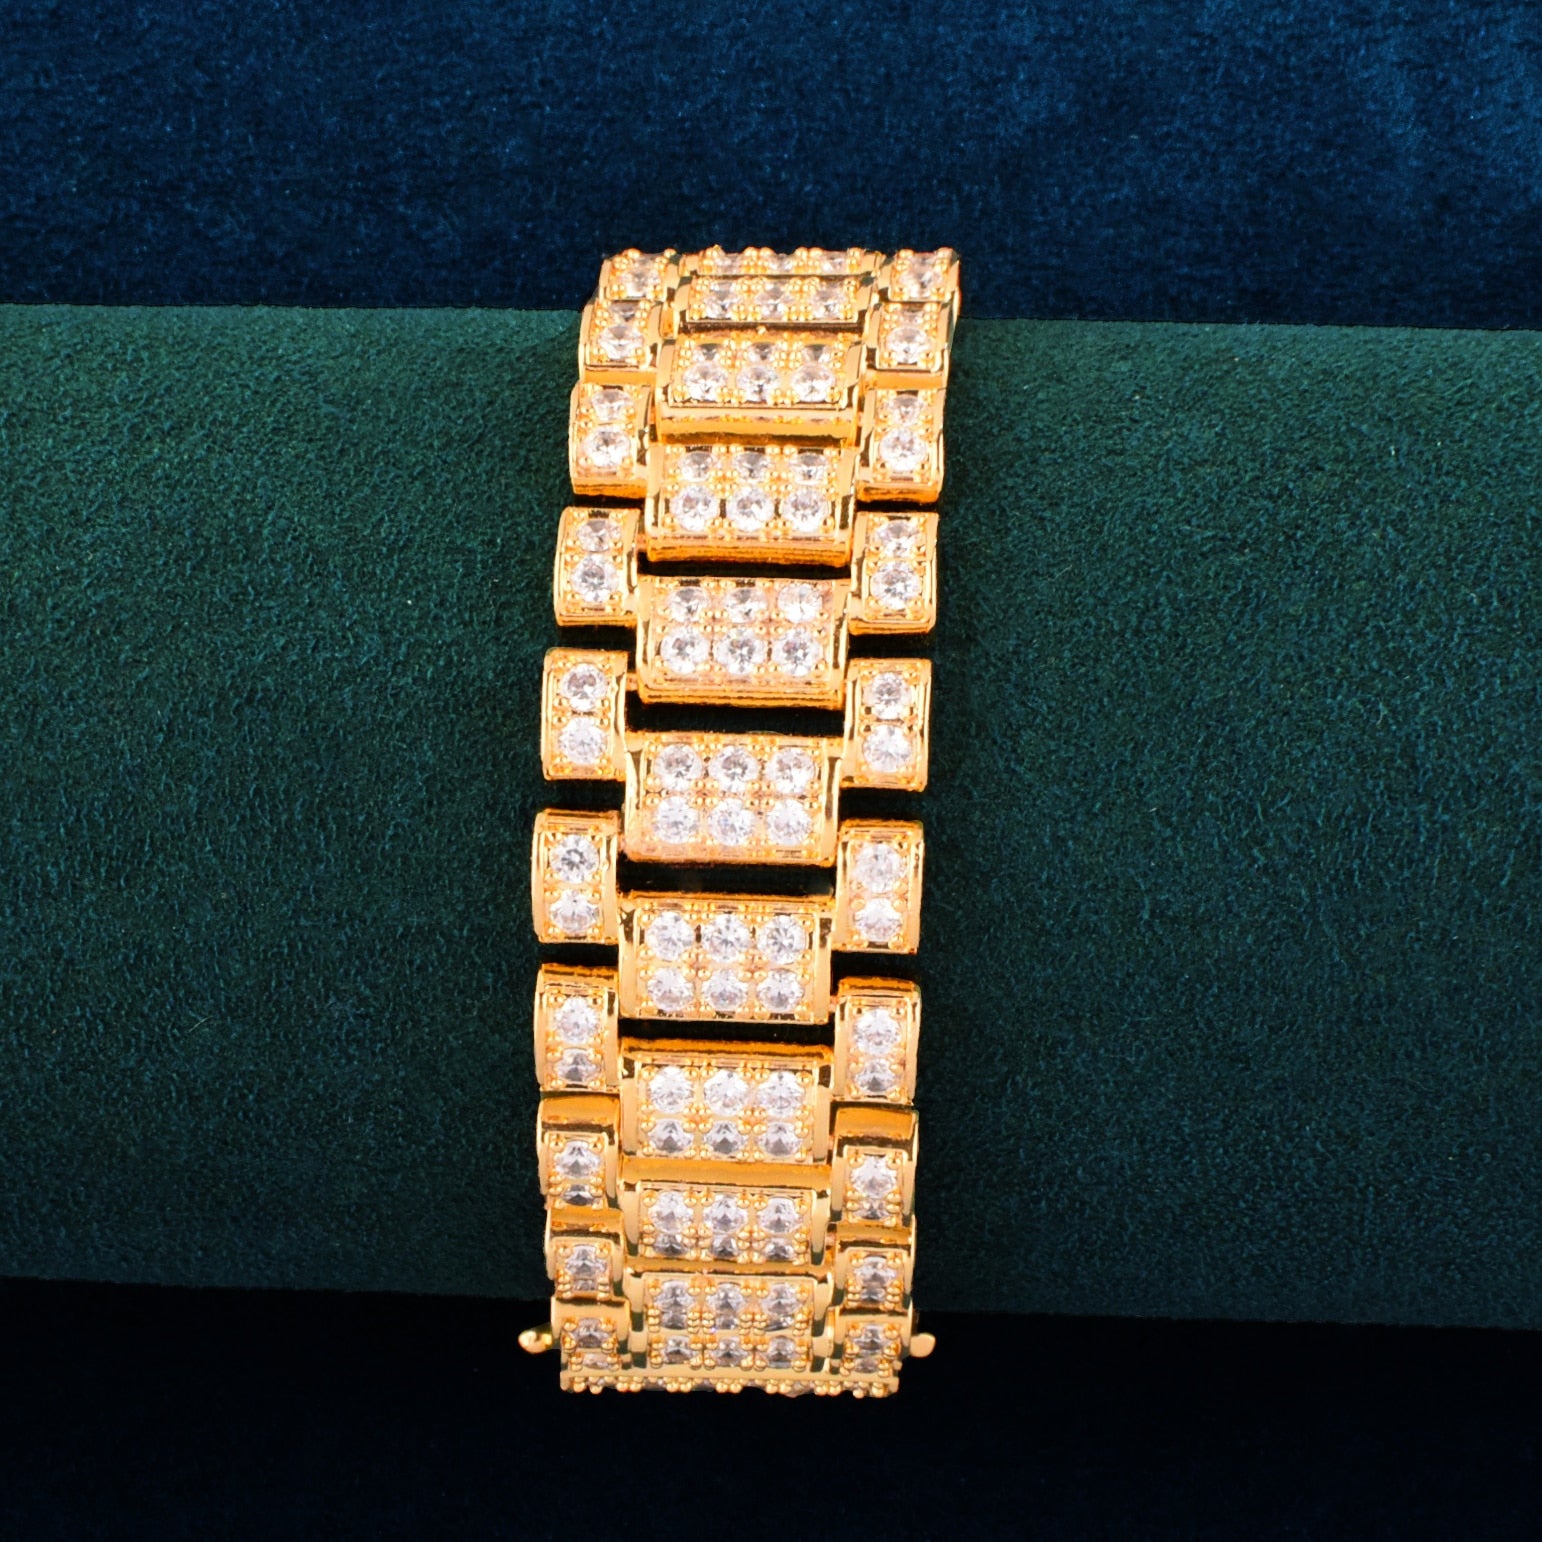 24mm | Watch Link Bracelet | Gold Watch Link Bracelet